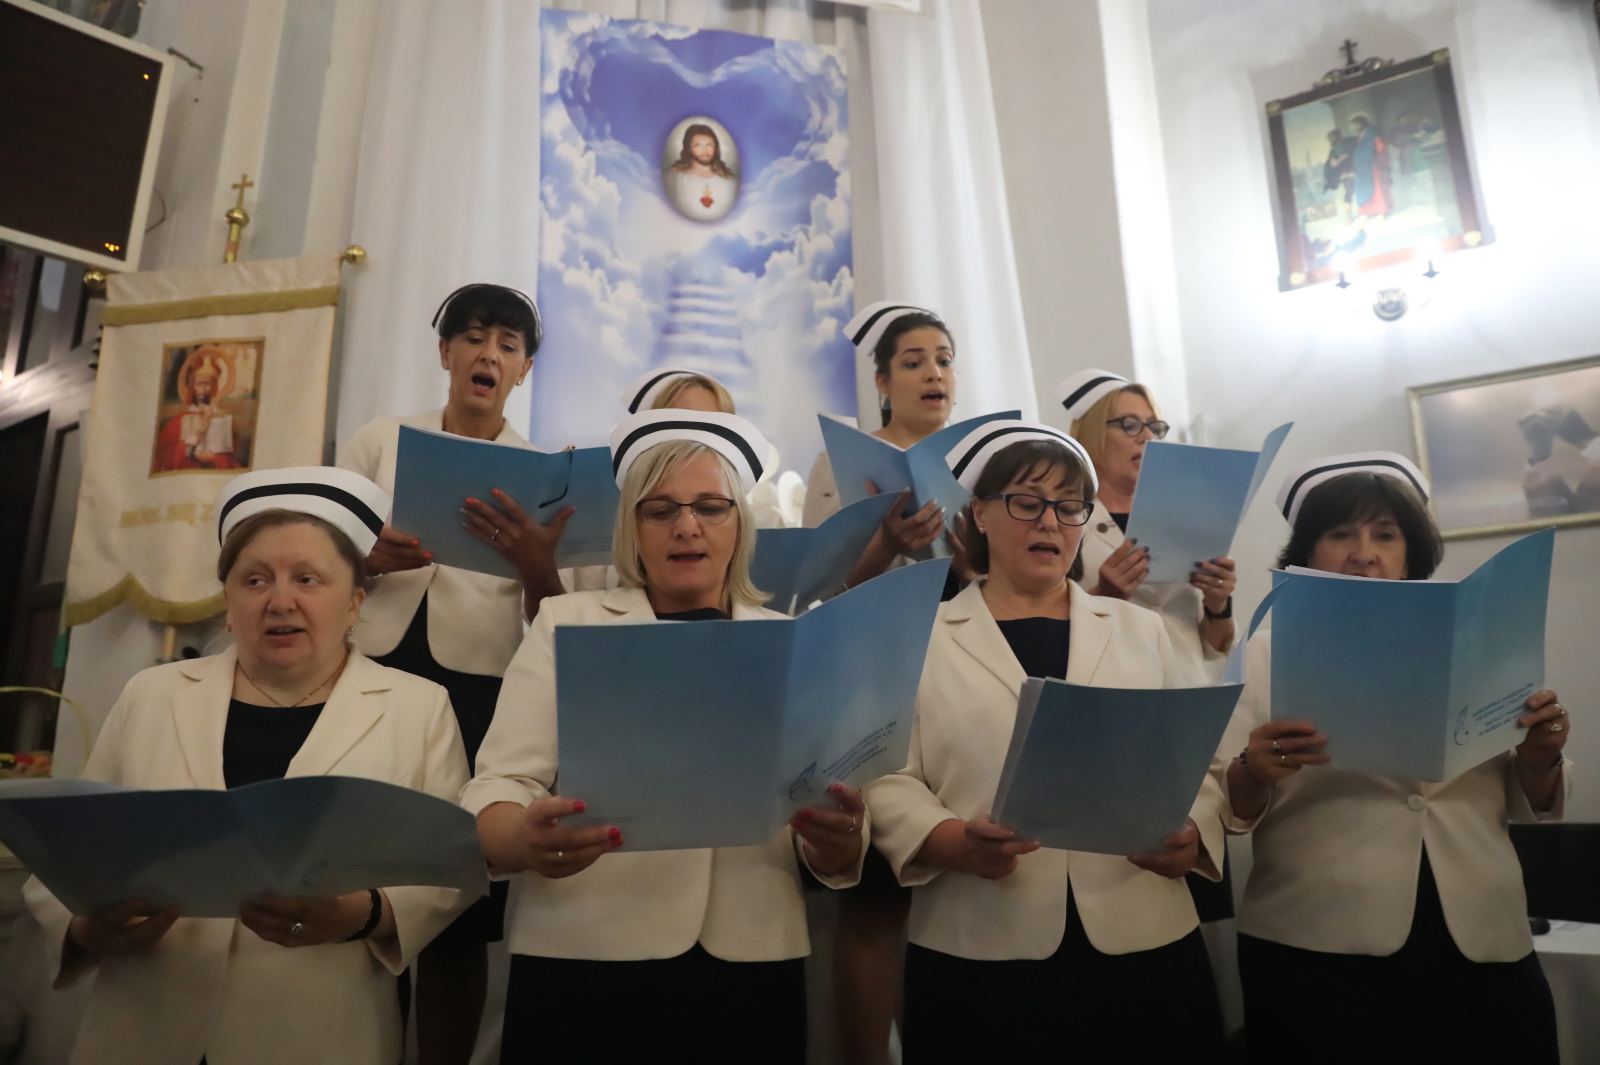 Wiązowna, Msza święta w intencji pielęgniarek u bł. Hanny Chrzanowskiej  PAP/Tomasz Gzell